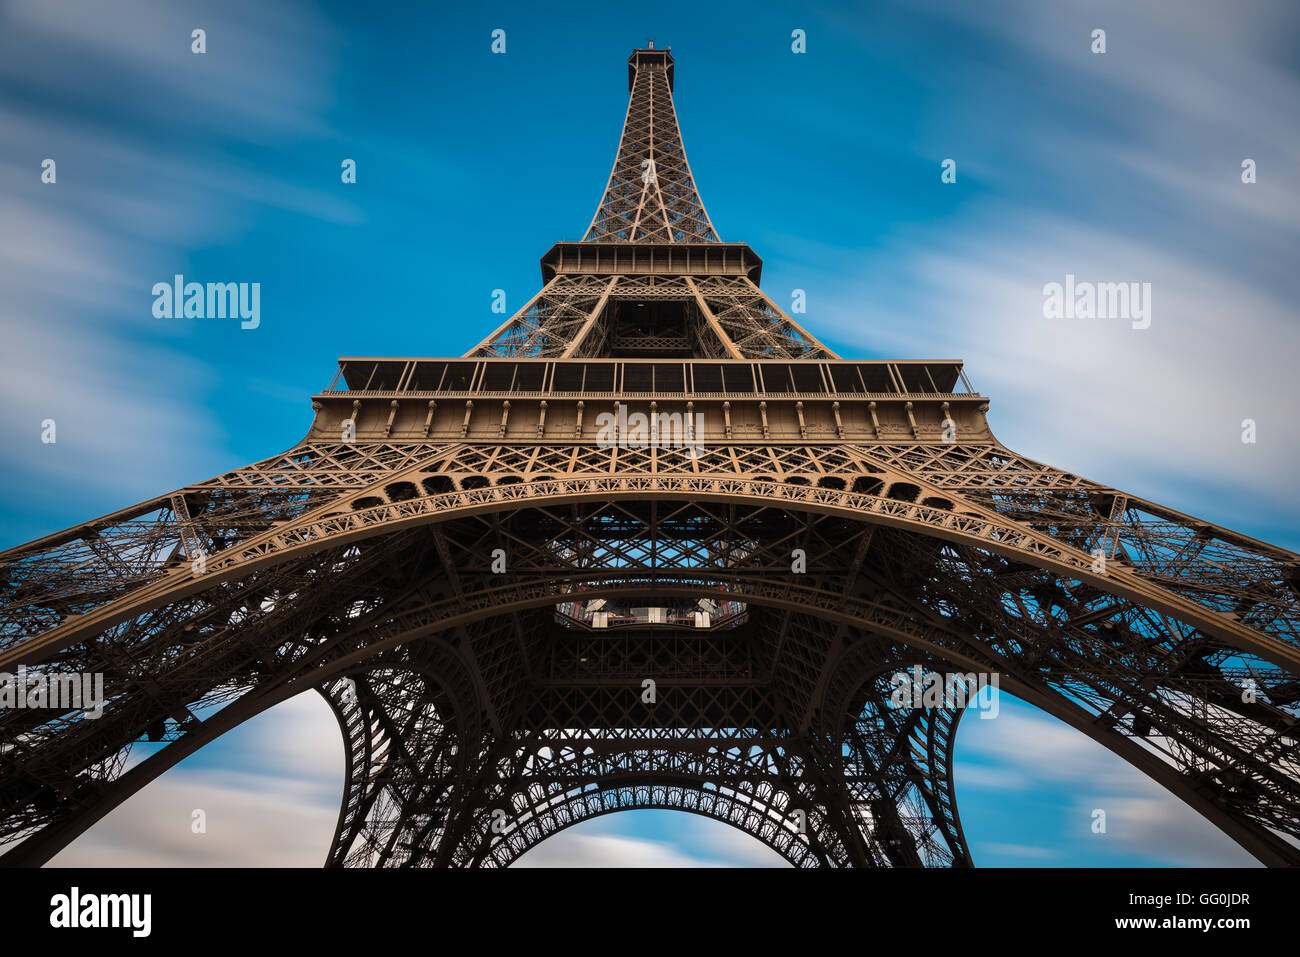 The Eiffel Tower (La tour Eiffel) on the Champ de Mars in Paris, France Stock Photo